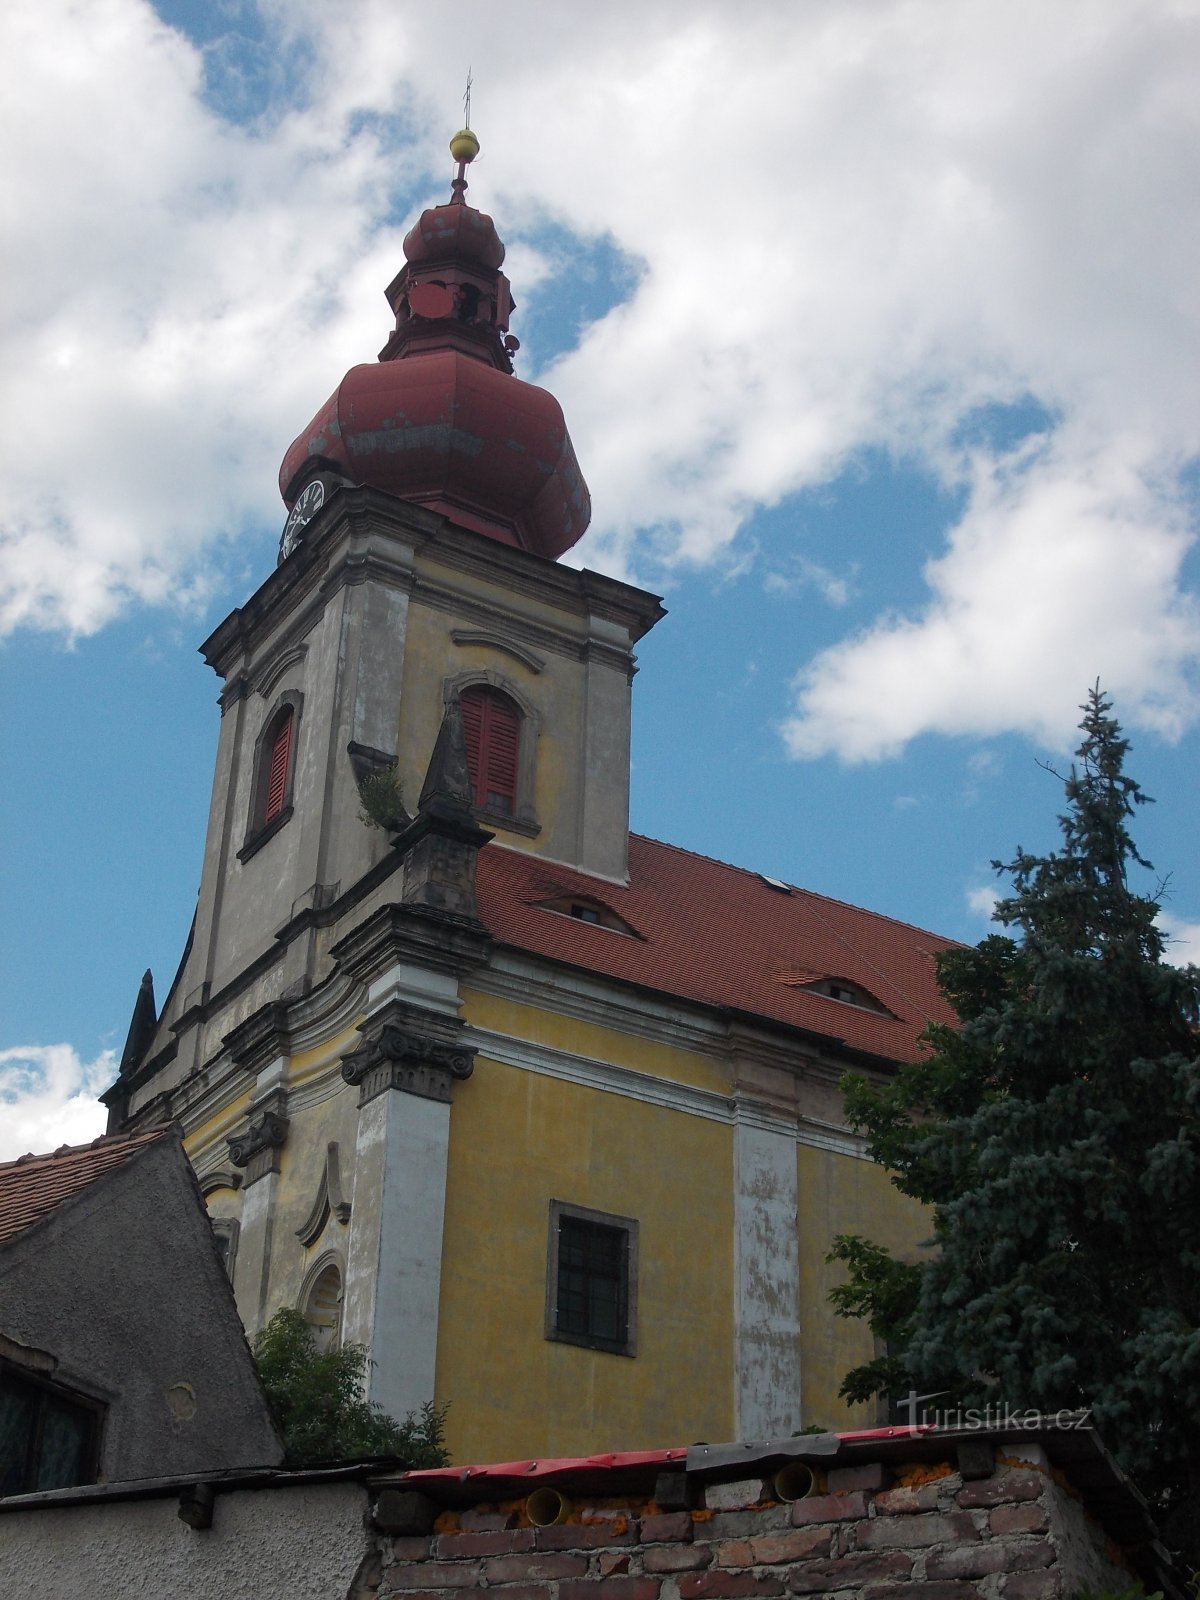 kościół z wbudowaną wieżą graniastosłupową, zwieńczoną wieżą w kształcie cebuli